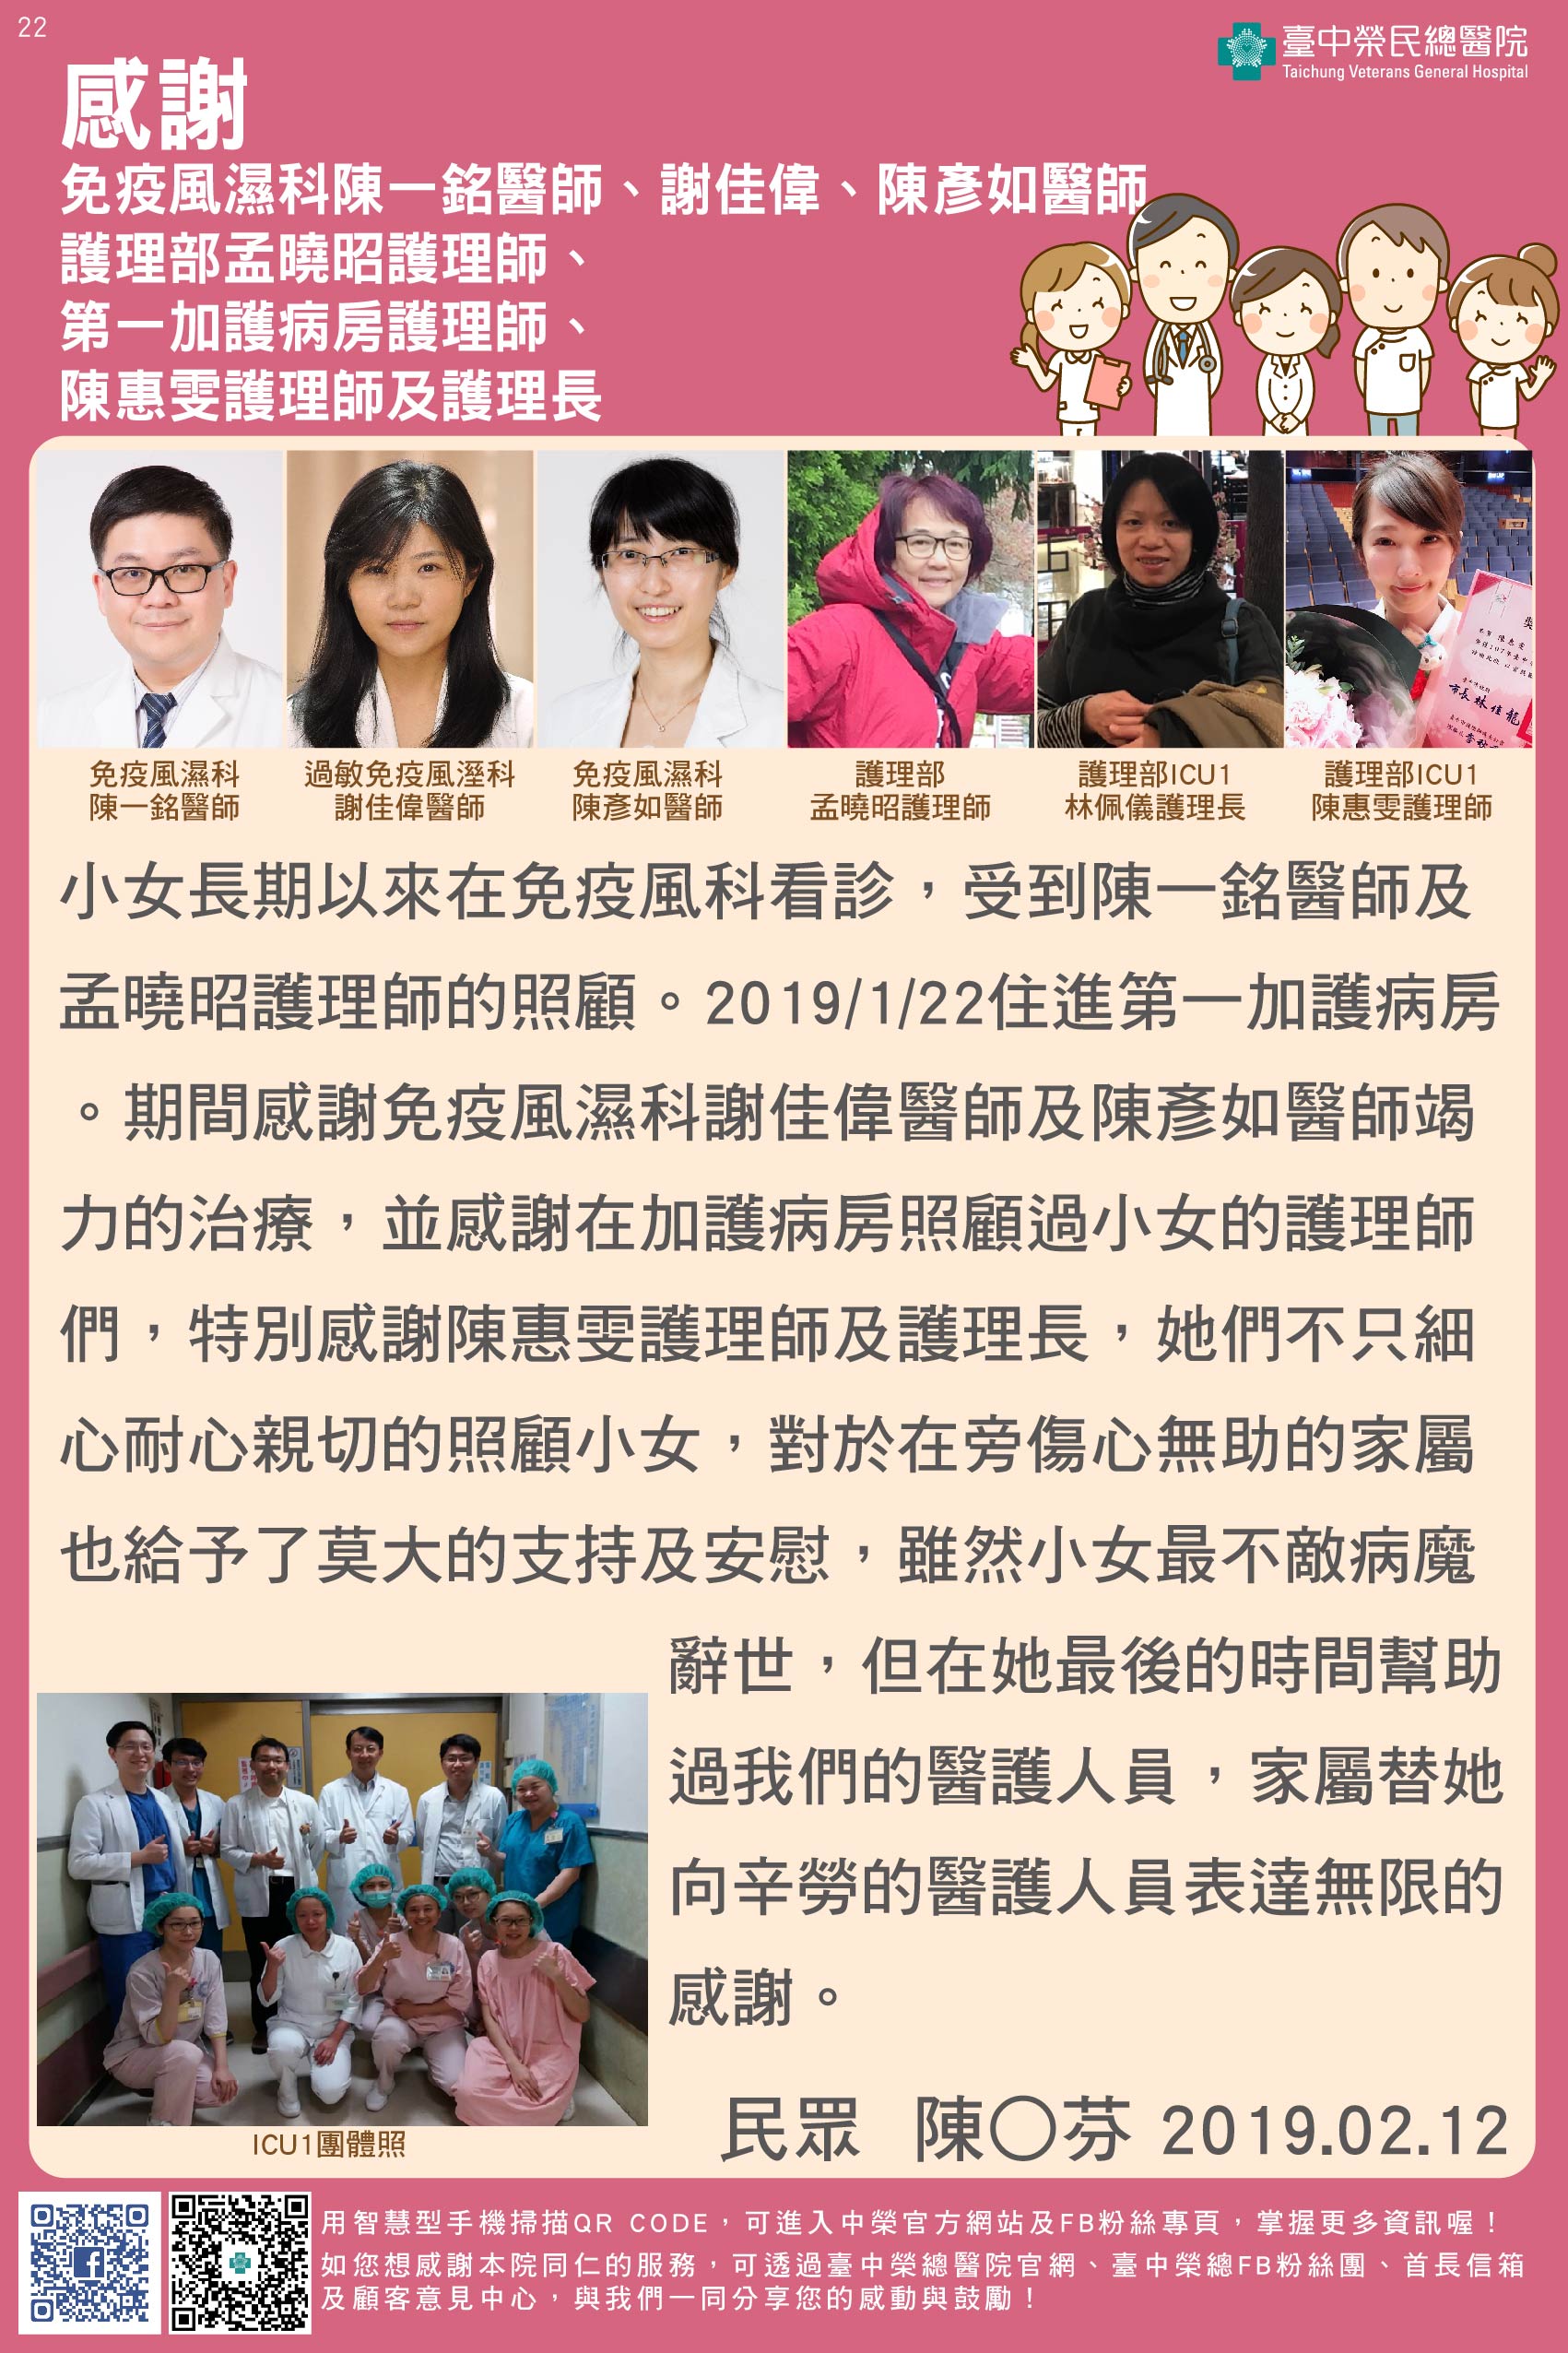 感謝免疫風濕科陳一銘醫師、孟曉昭護理師、謝佳偉、陳彥如醫師